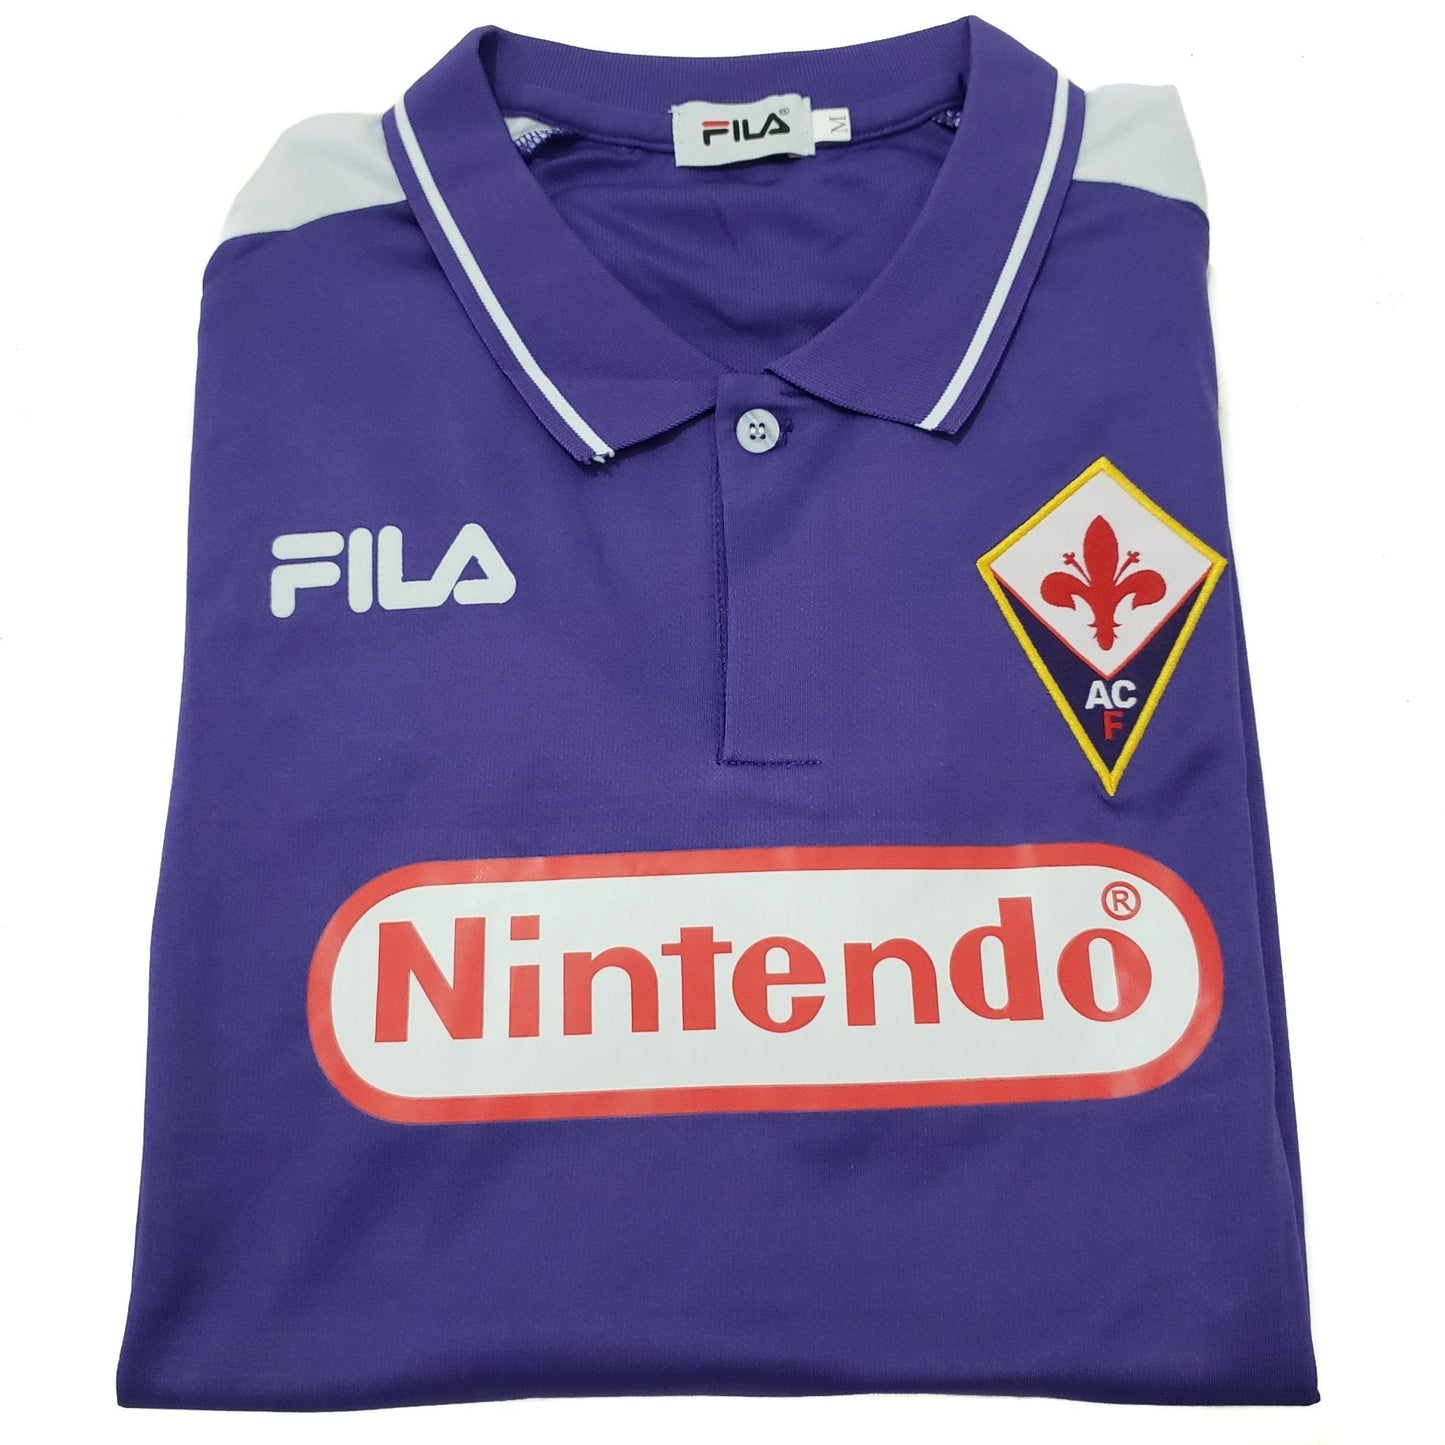 Fiorentina Titular 1998/99 - Batistuta - Thunder Internacional